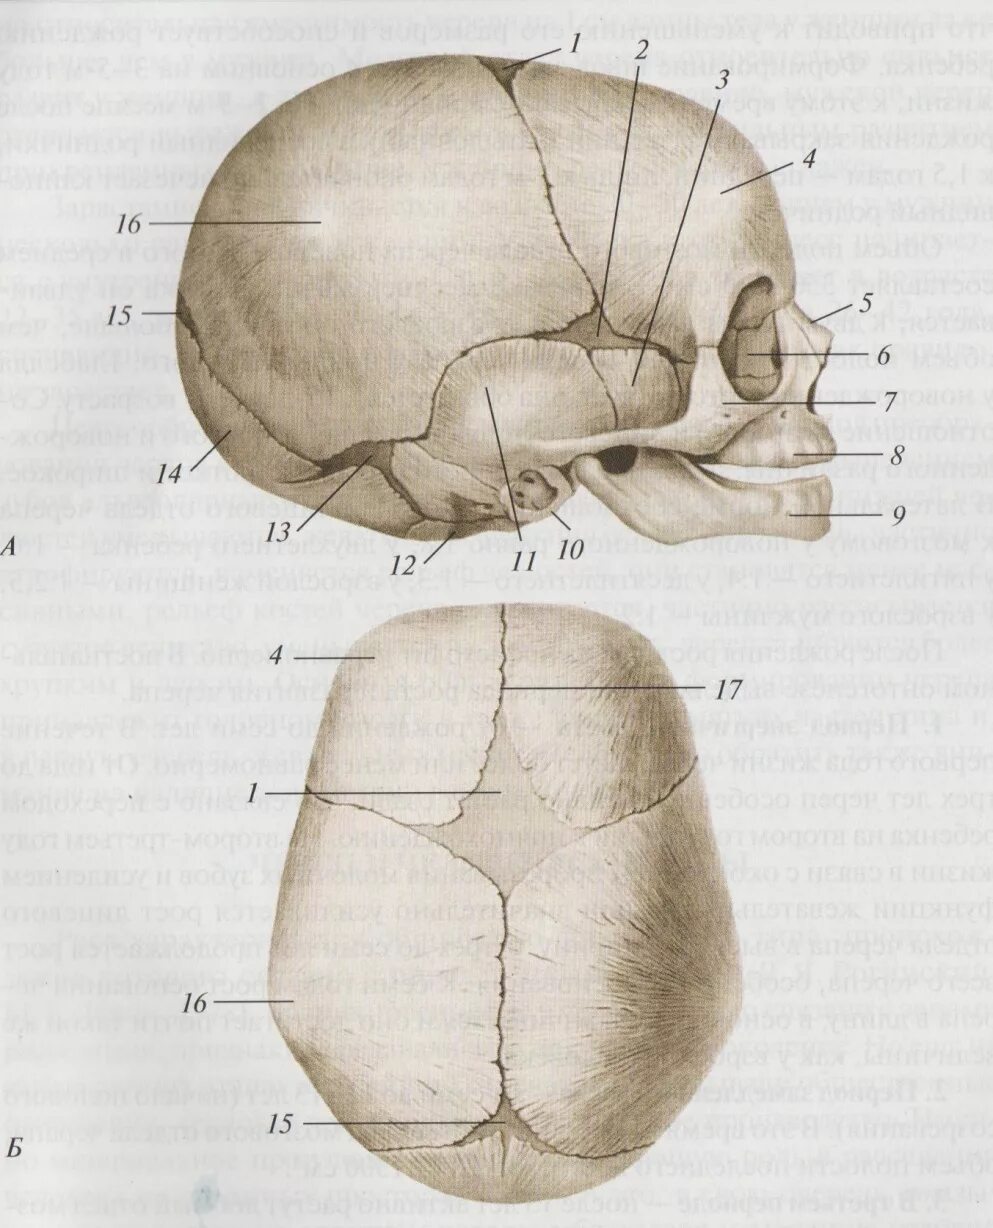 П роднички. Роднички новорожденного анатомия черепа. Скелет головы швы черепа роднички. Череп человека сбоку Родничок. Роднички у новорожденных анатомия.